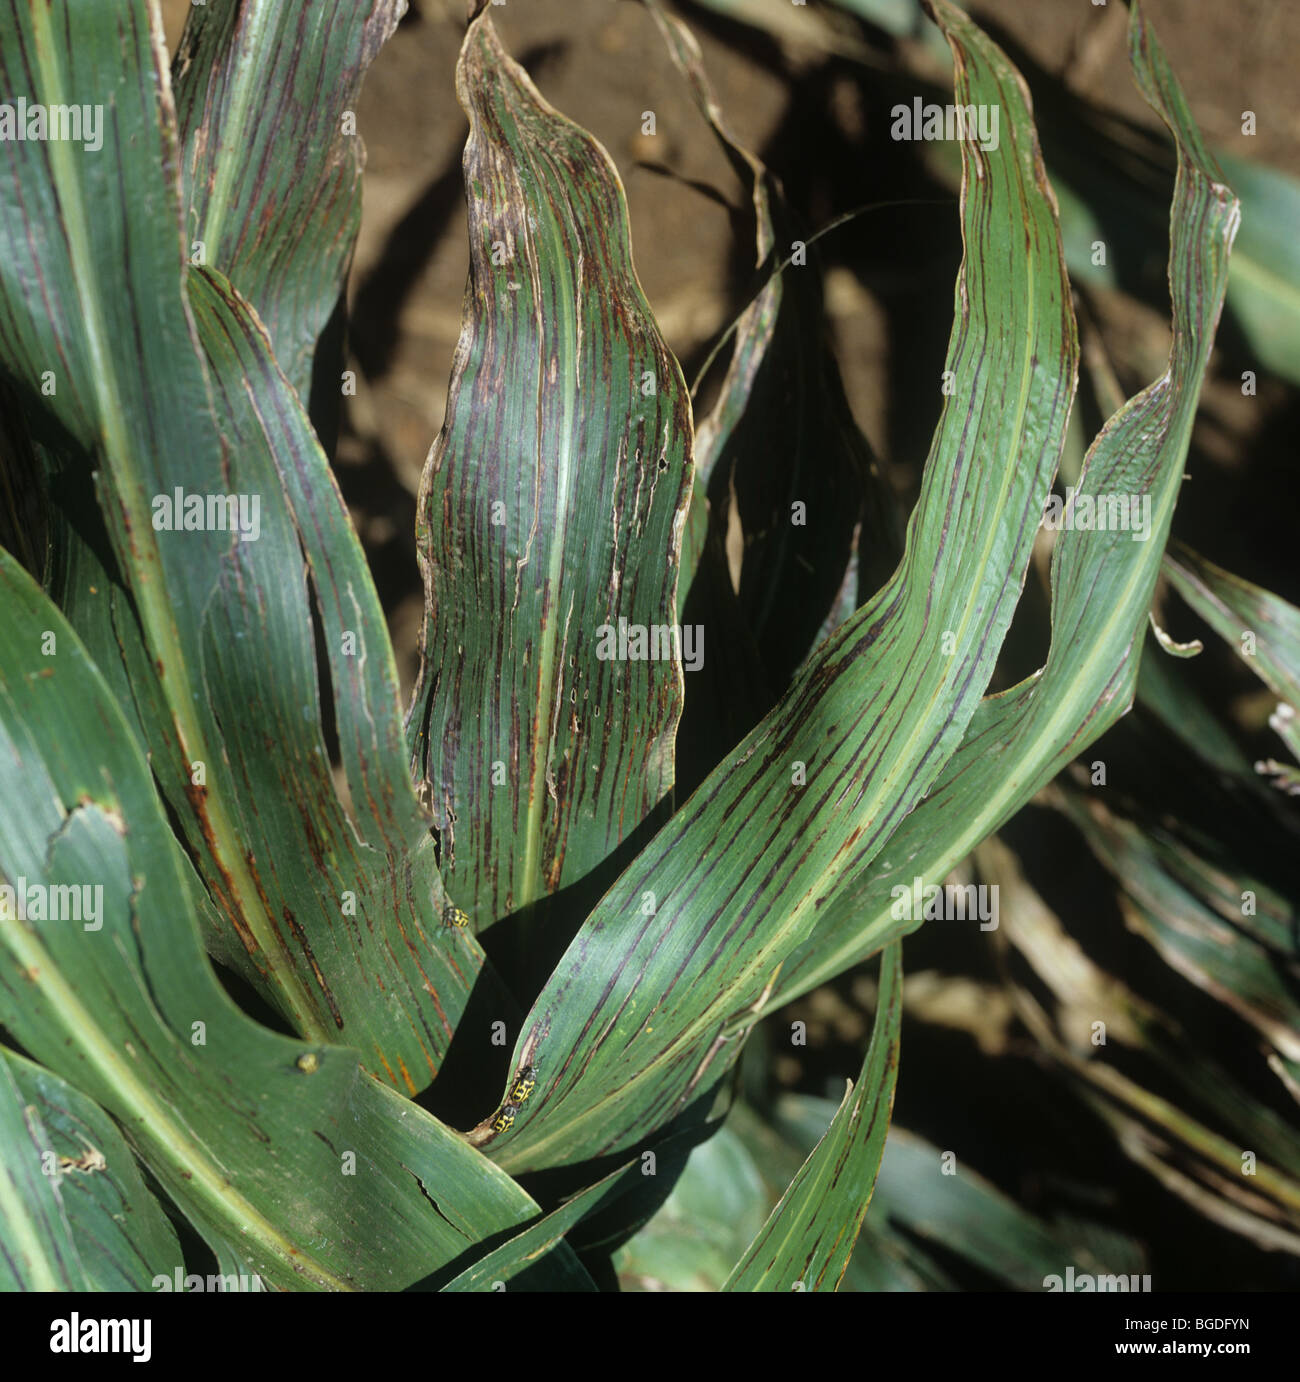 Streak spot or bacterial streak (Xanthomonas vasicola pv. holcicola) symptoms on crop sorghum leaves, South Africa Stock Photo